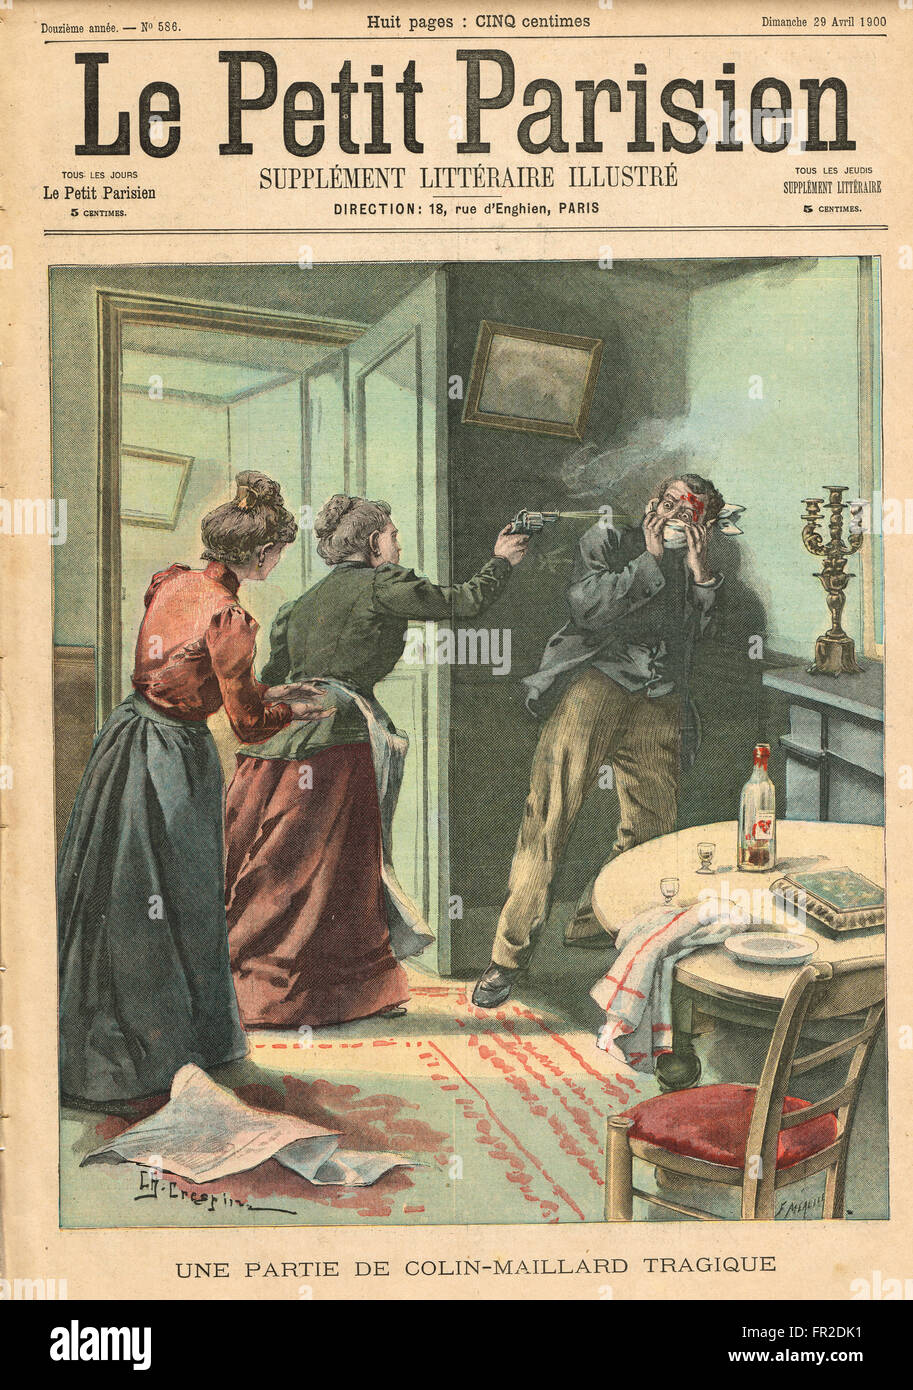 Homme mort aveugle Buff de l'homme abattu par la mère en droit, Marseille, France 1900. Illustration du petit parisien dans le journal français illustré Banque D'Images